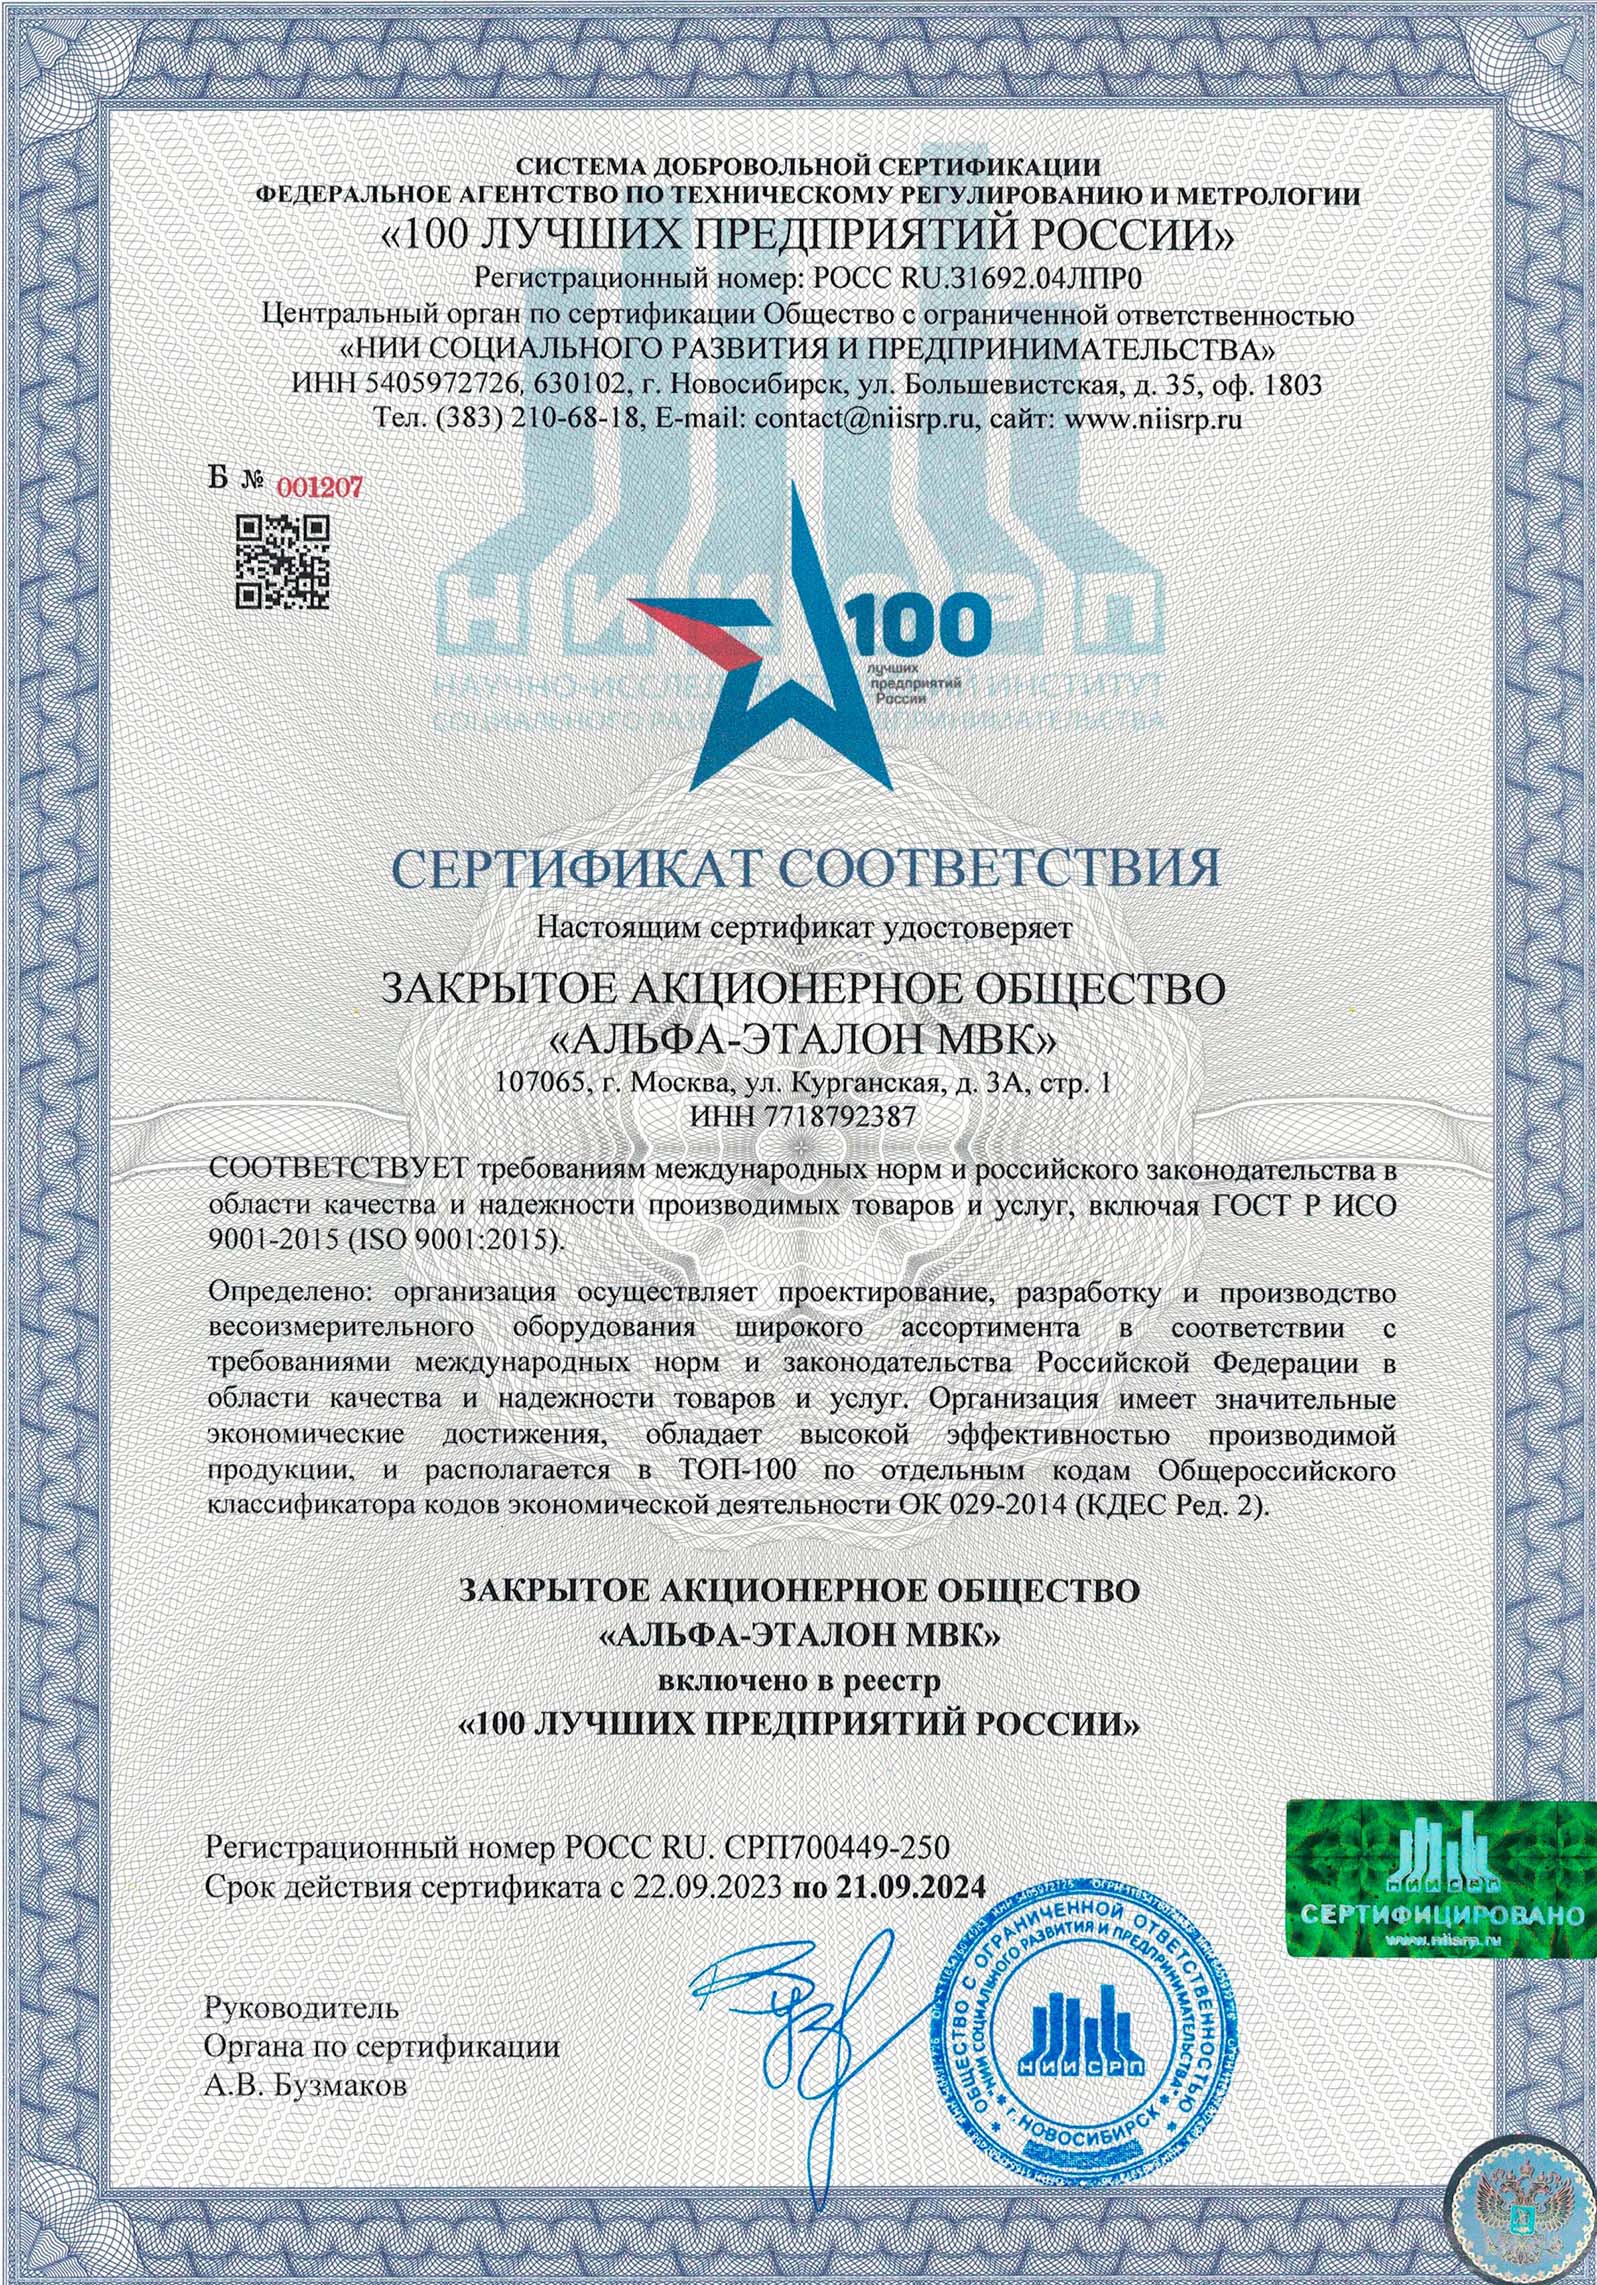 Сертификат ЗАО «Альфа-Эталон МВК»